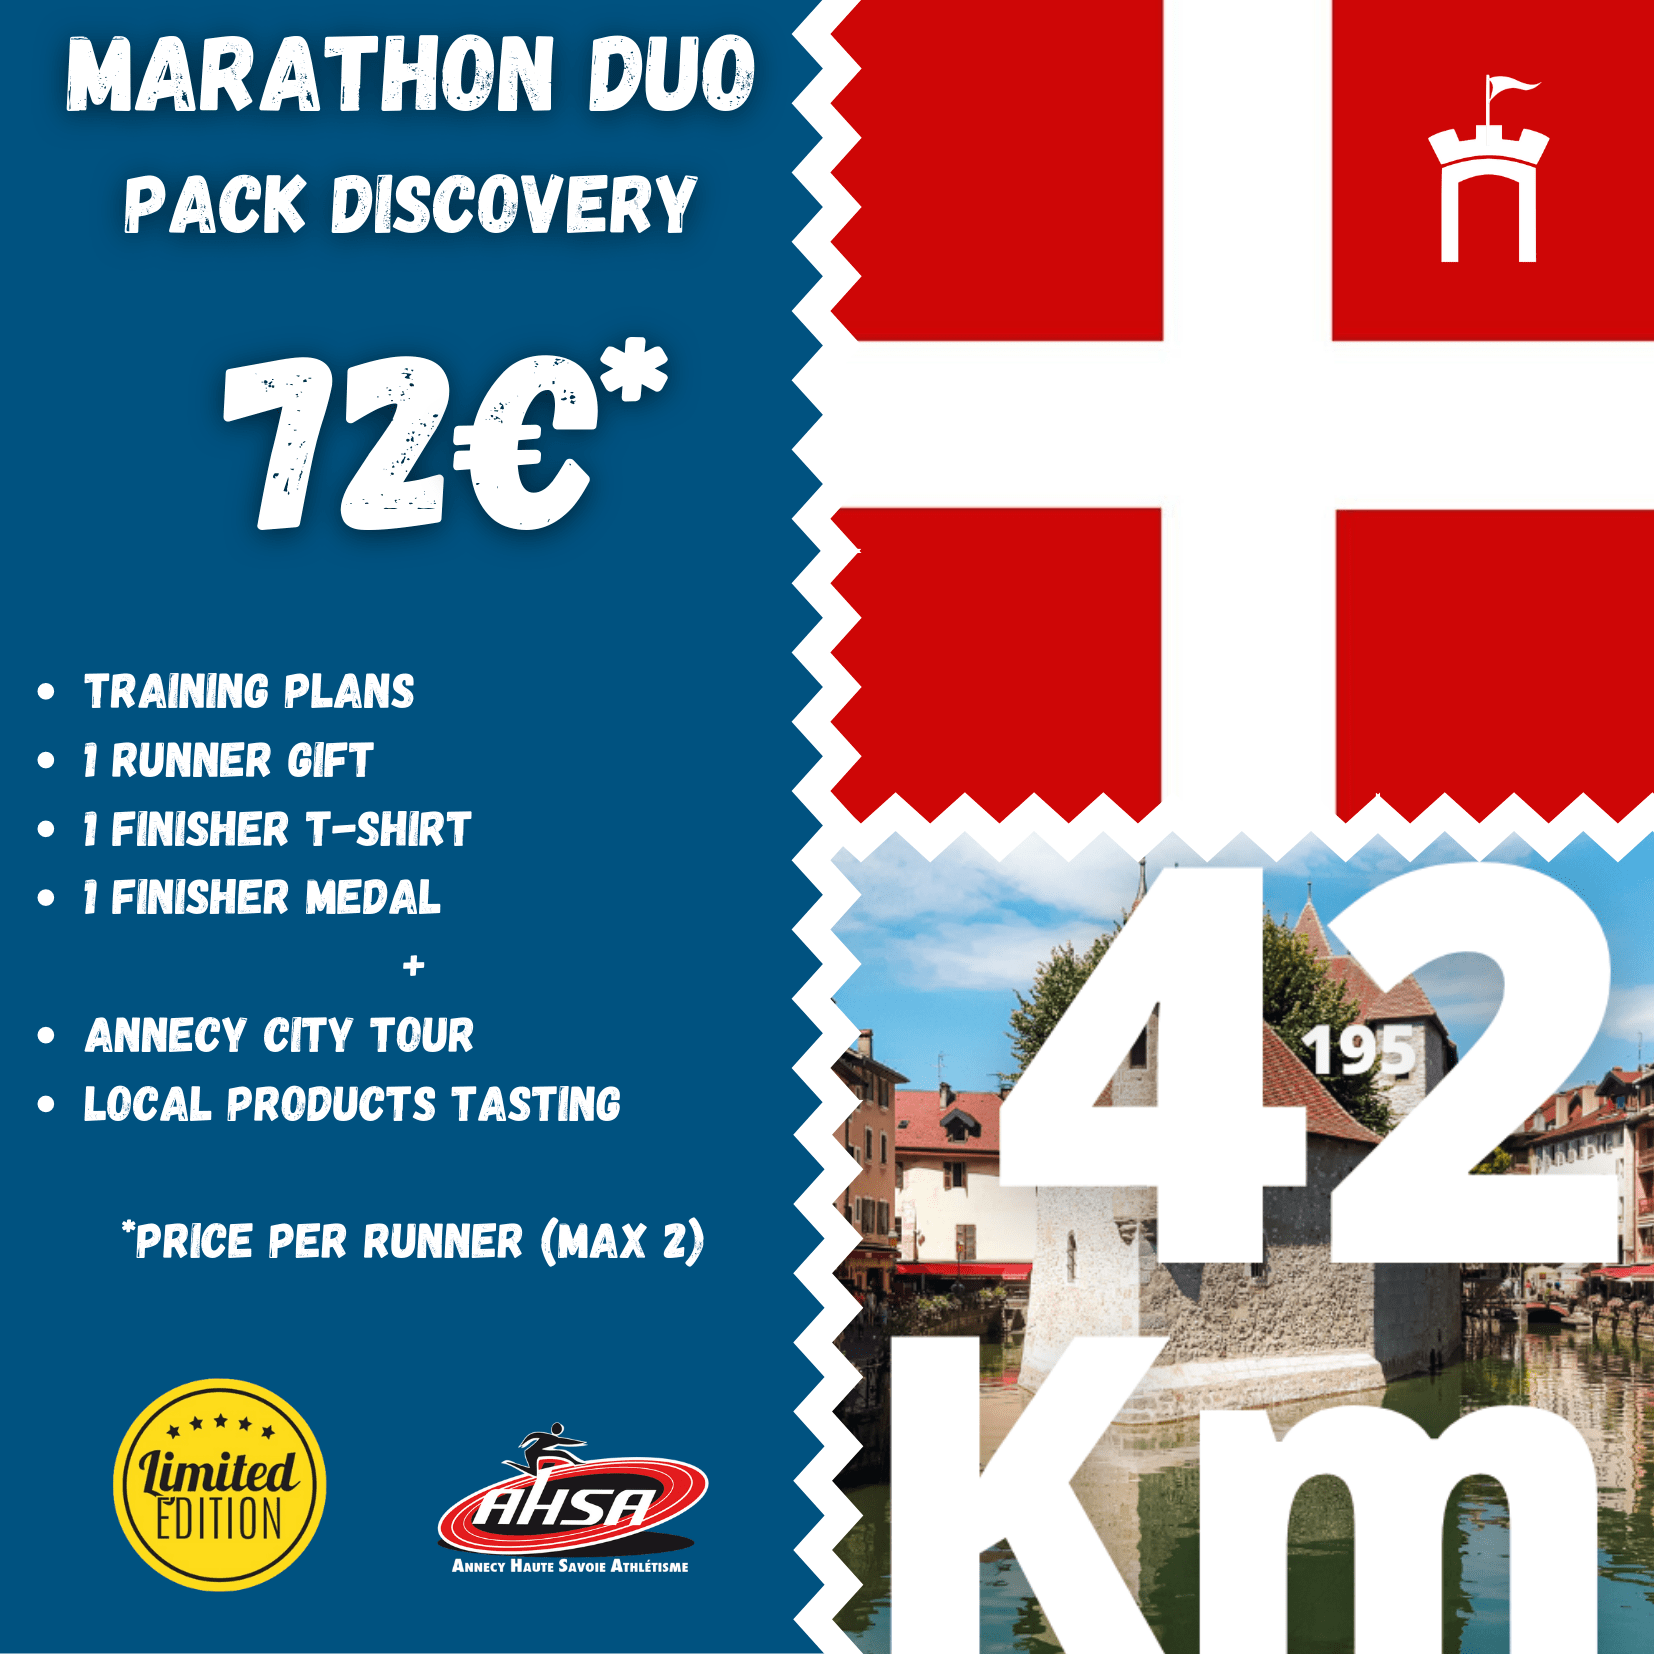 Marathon Duo, Annecy lake, running, Haute-Savoie, Rhône Alpes, France, ASHA, Annecy Haute-Savoie Athletism